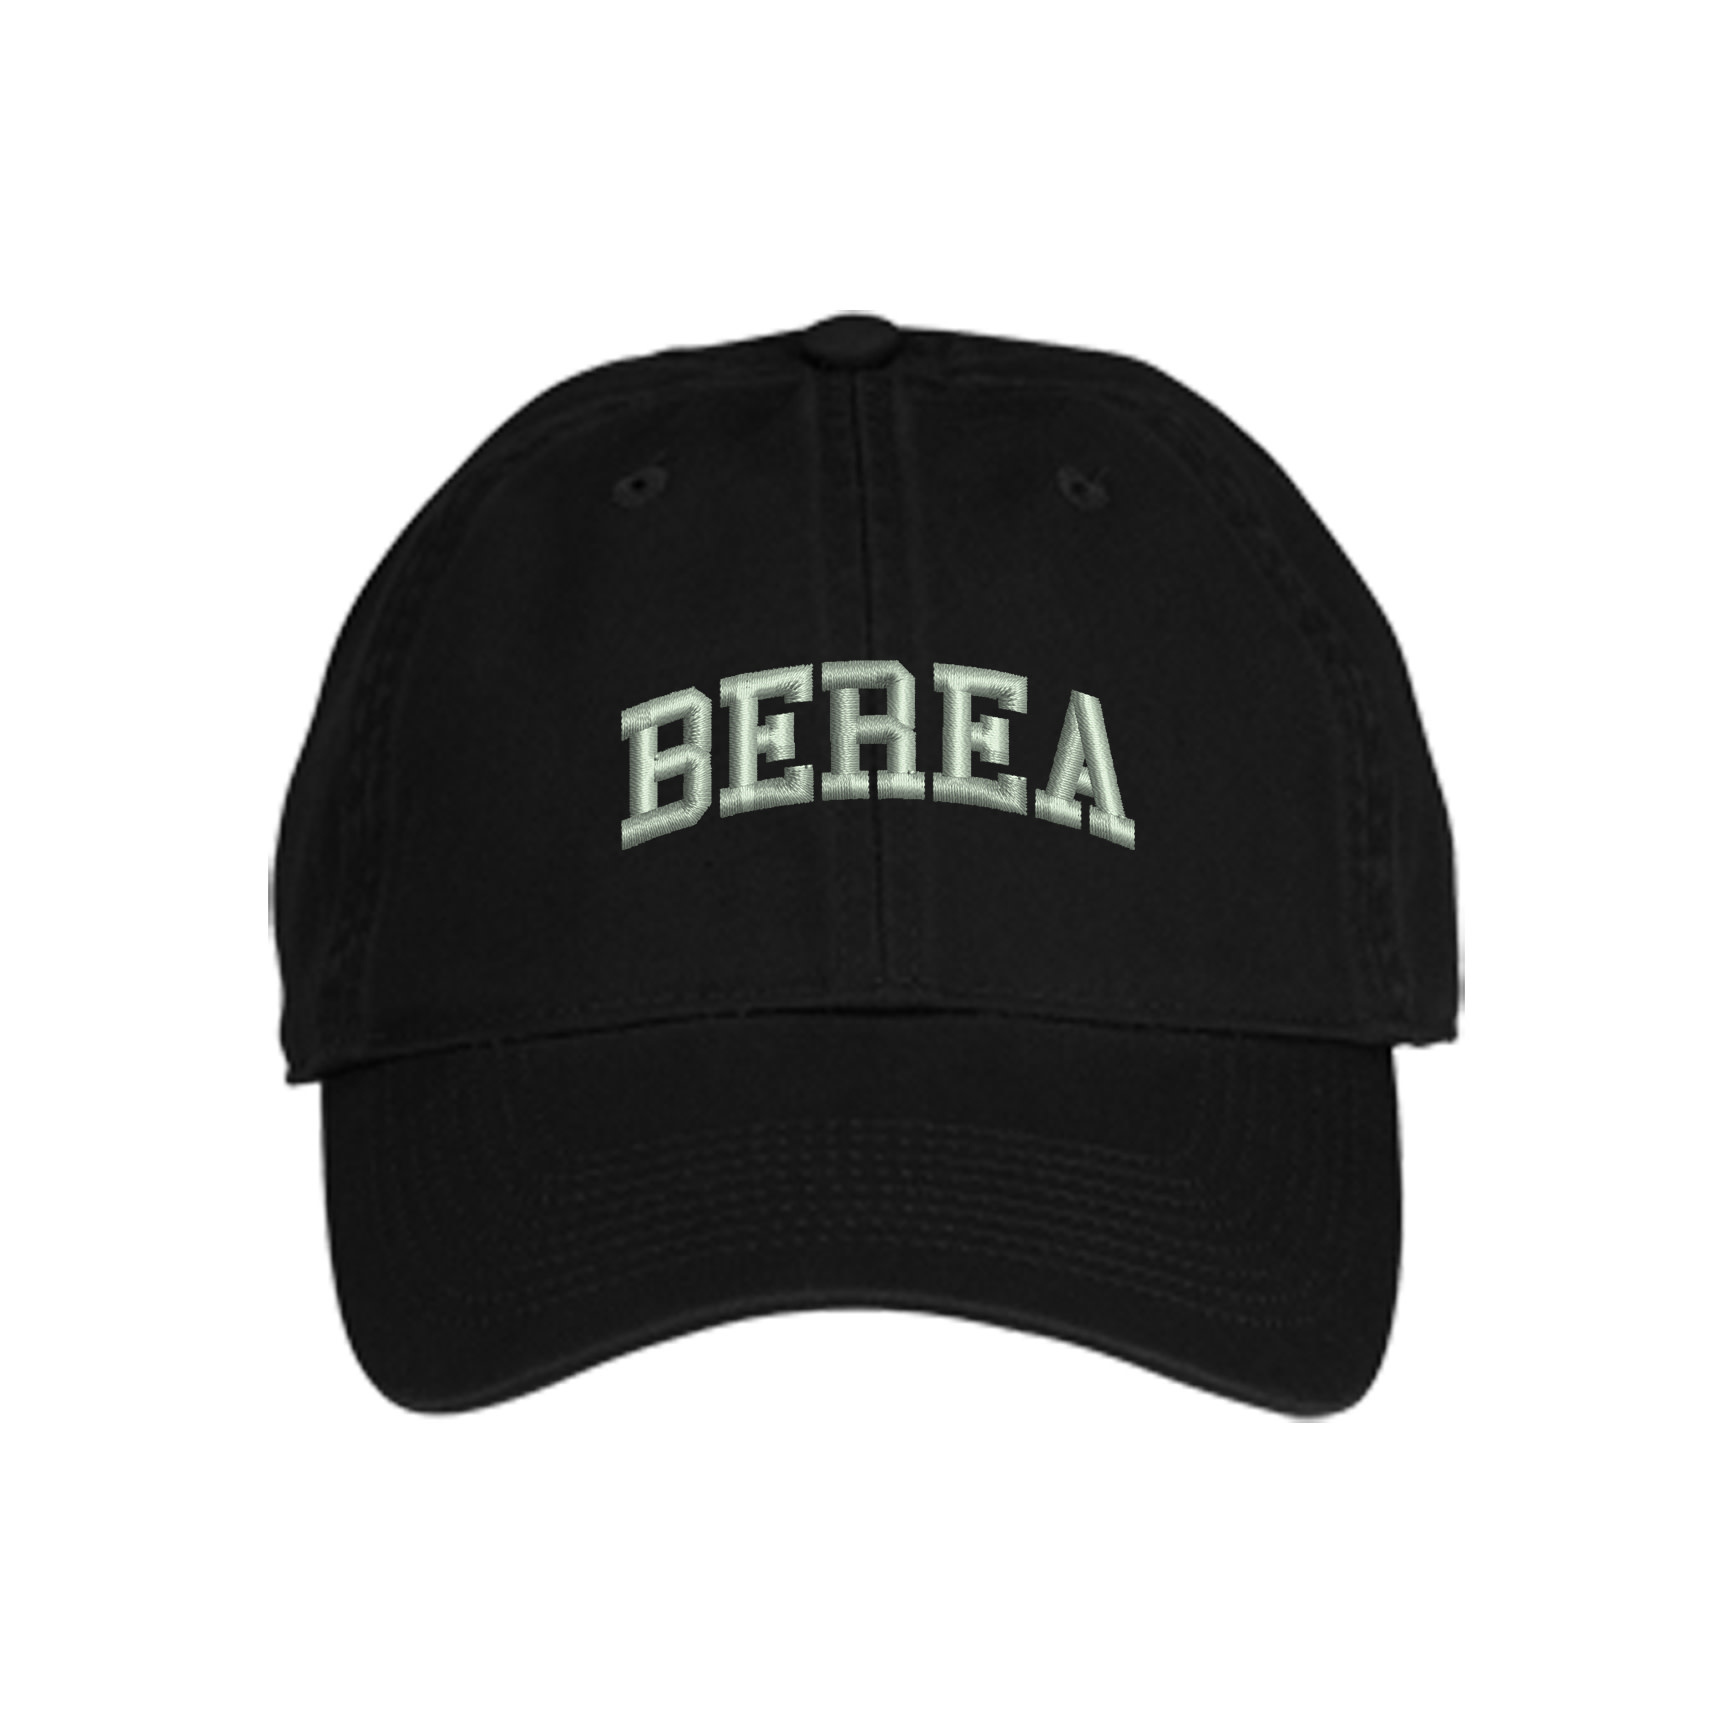 Berea Ball Cap-2